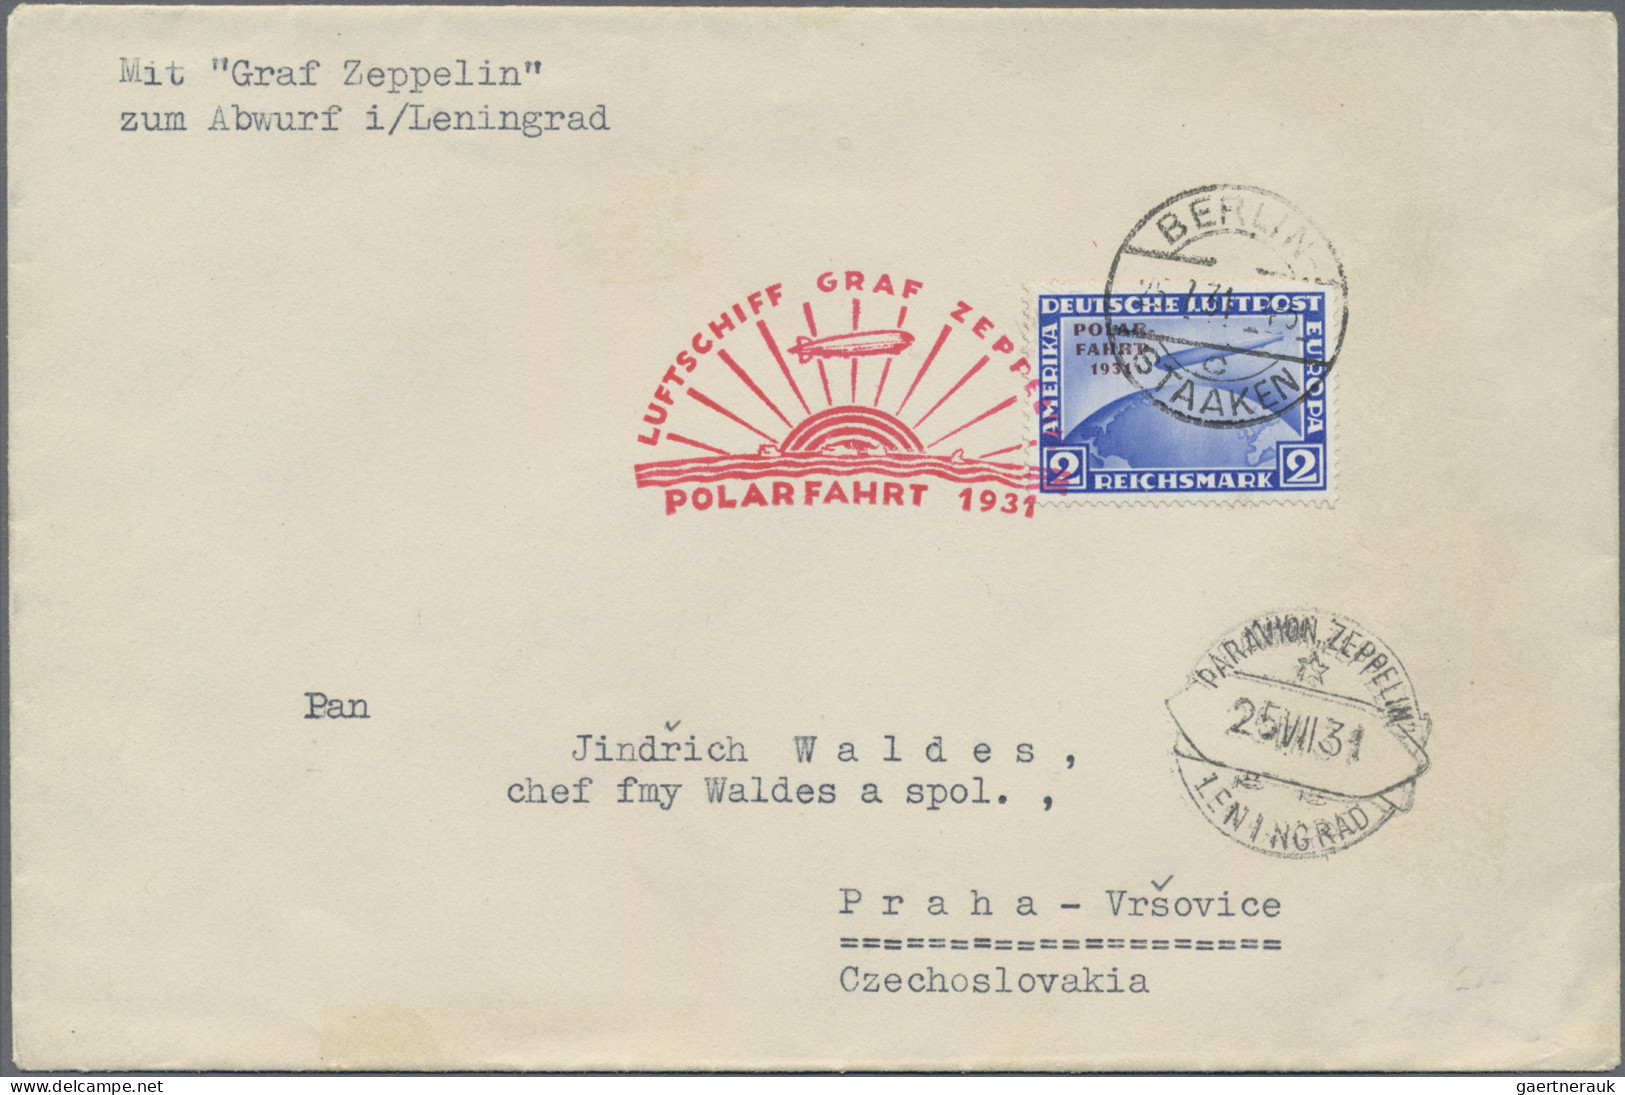 Deutsches Reich - Weimar: 1931, Polarfahrt, 2 RM Auf Zeppelinbrief, Auflieferung - Covers & Documents